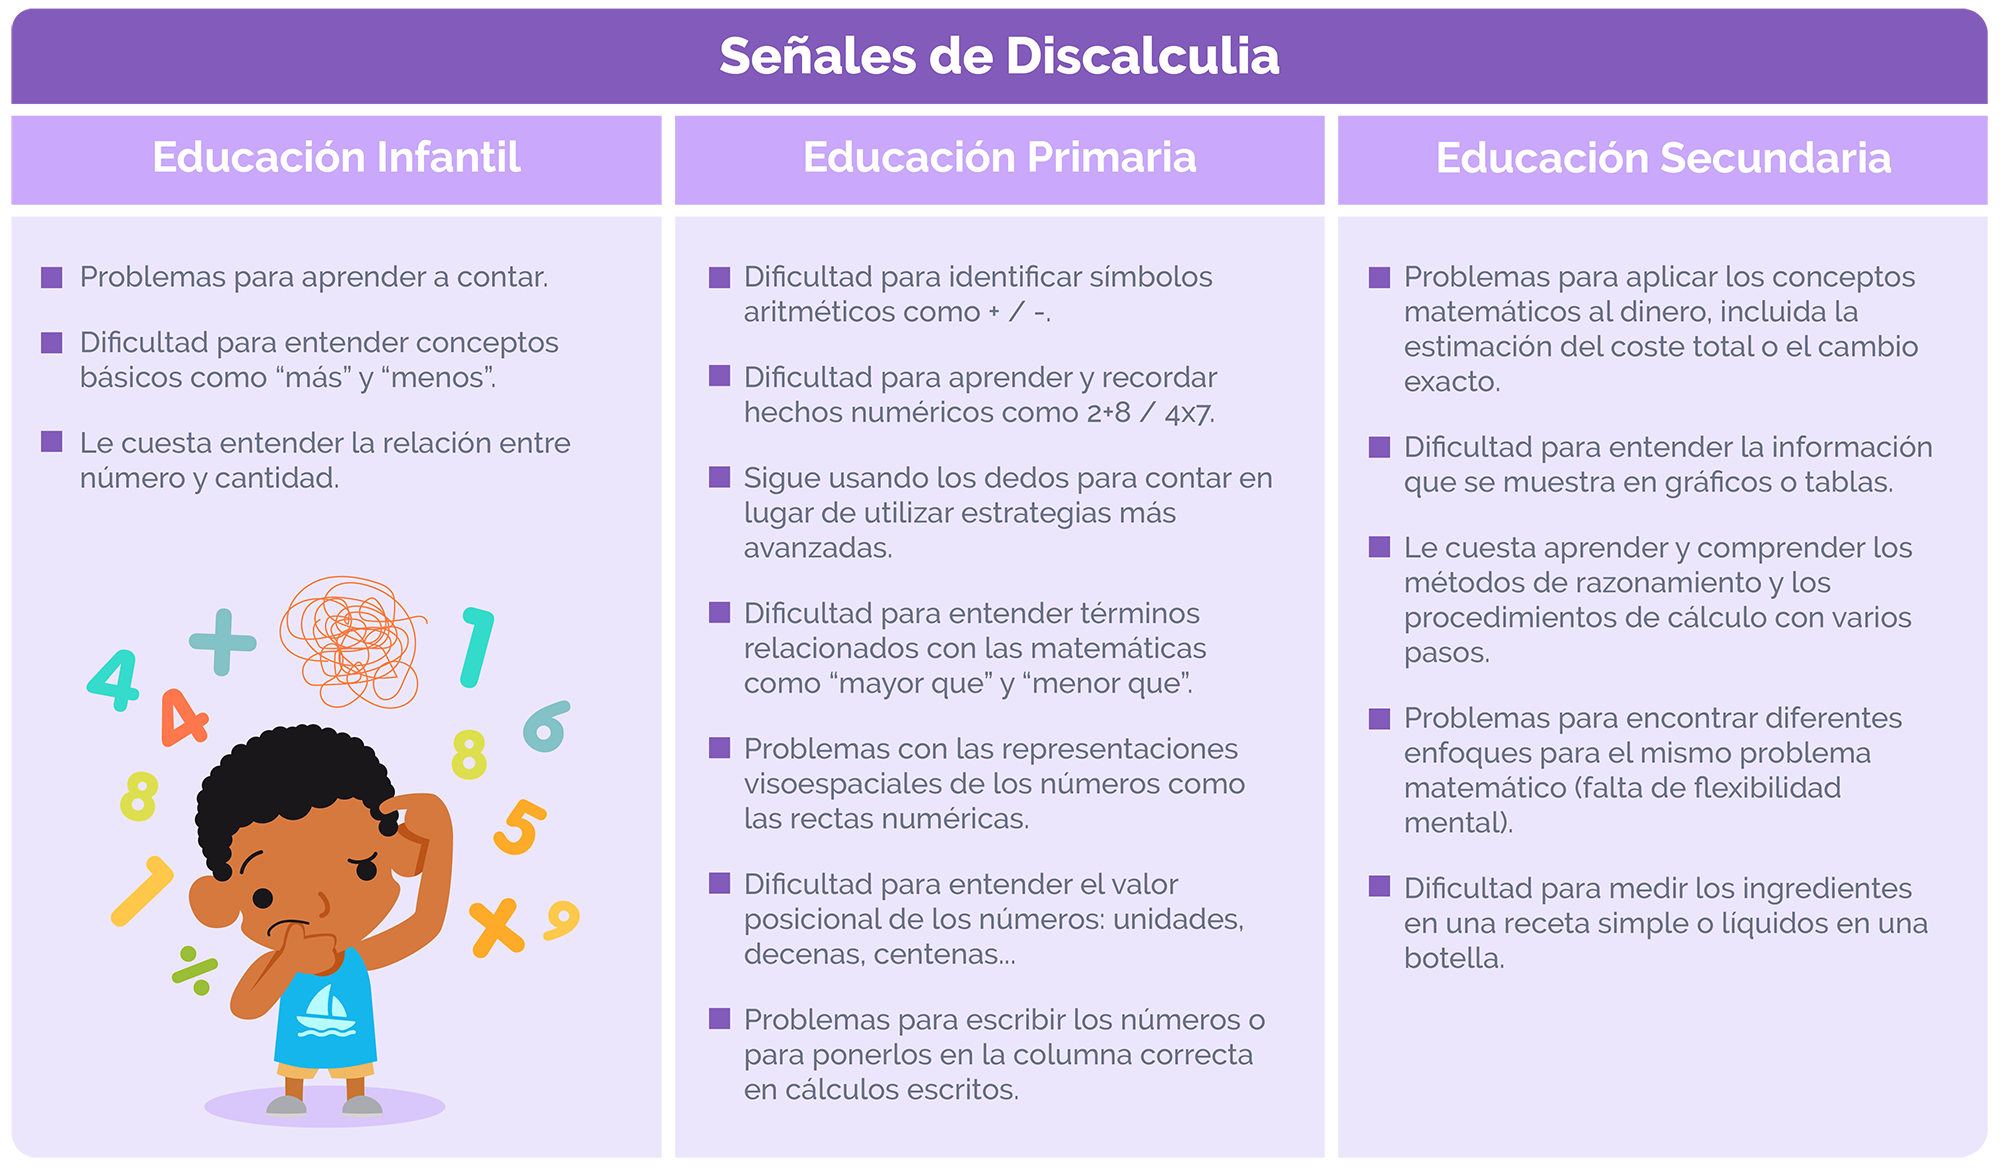 Dislexia y discalculia. Síntomas de la discalculia en las diferentes etapas educativas.